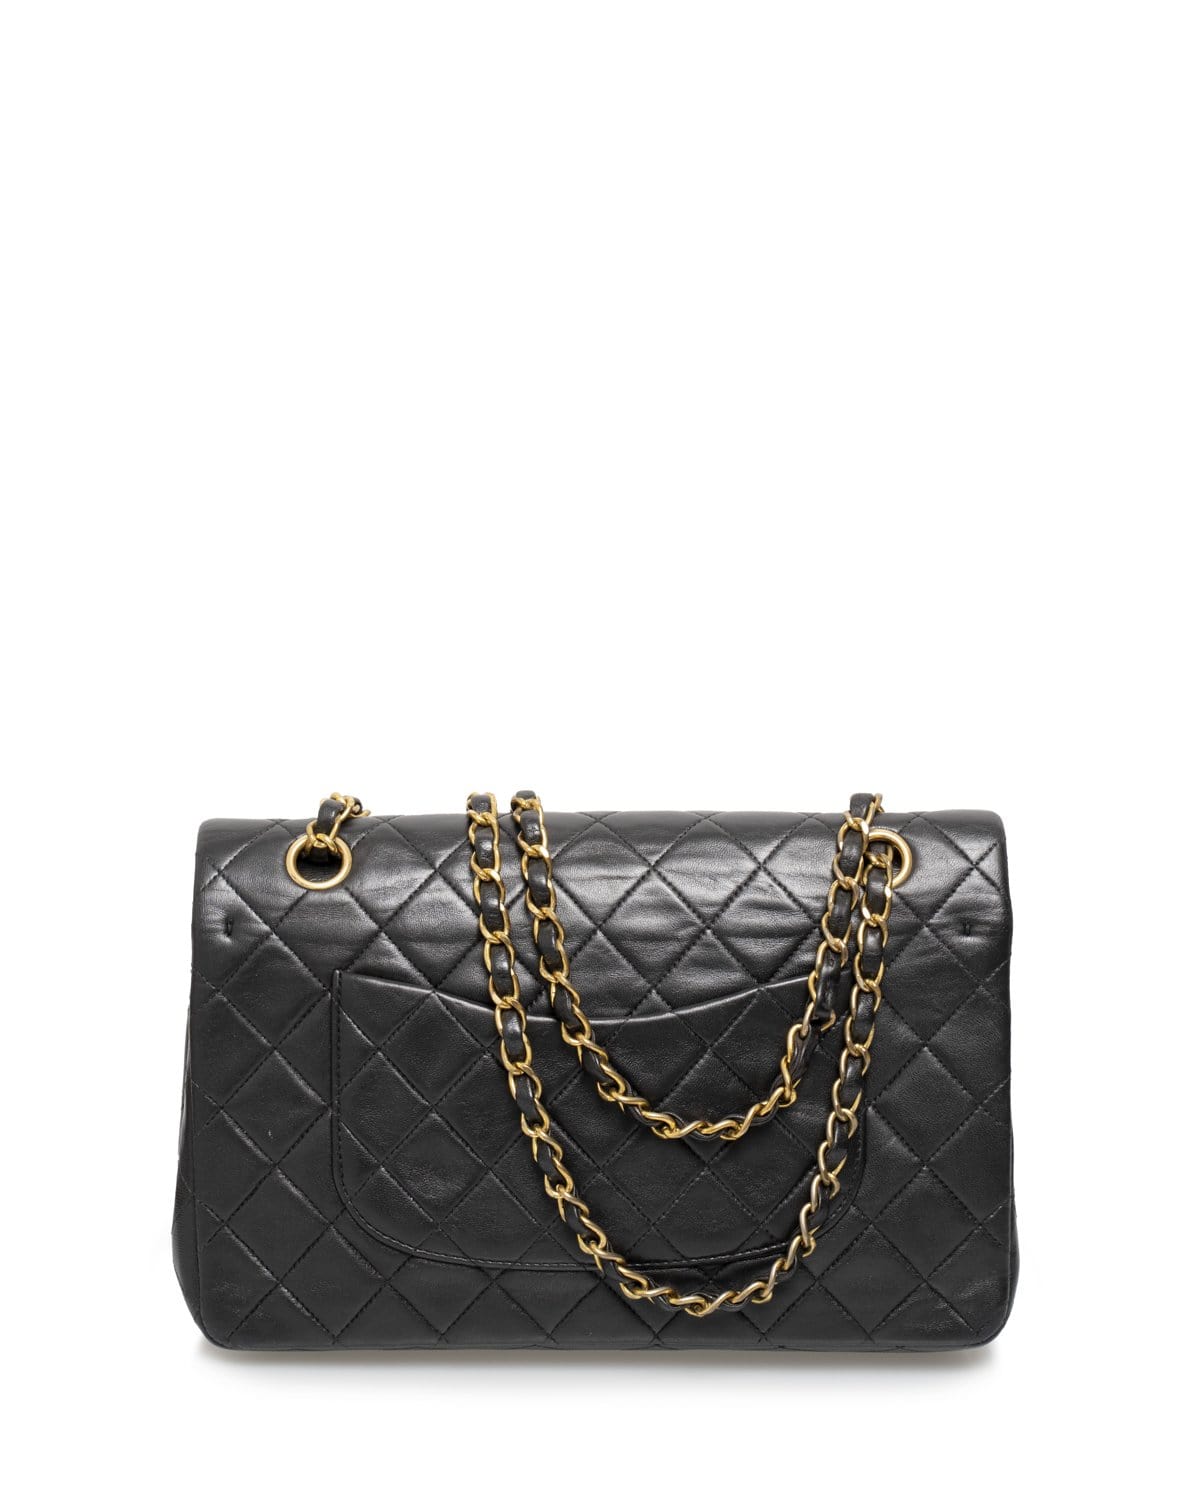 Chanel Chanel 10inch Vintage Flap Bag - ADL1531